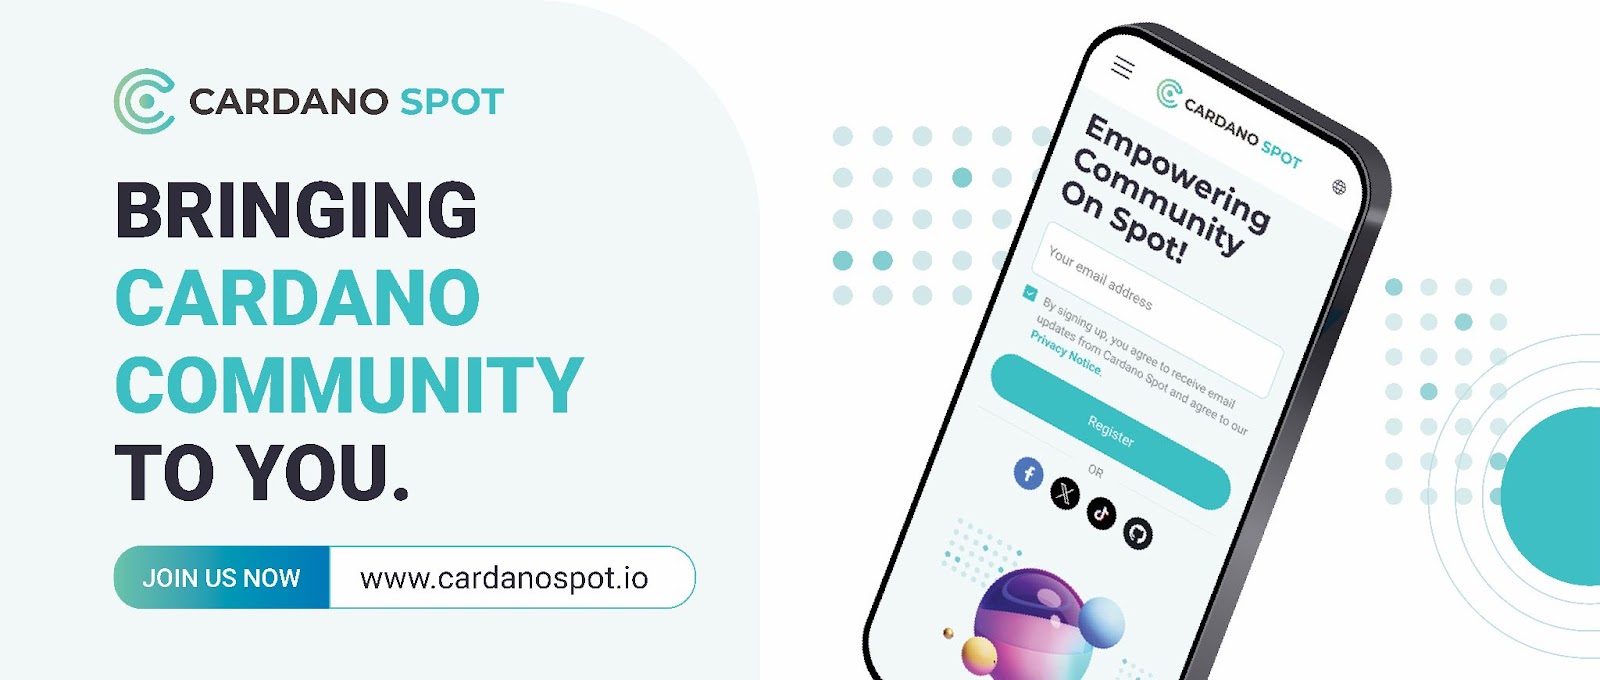 Cardano Spot meluncurkan fitur-fitur baru untuk memperkuat komunitas blockchain